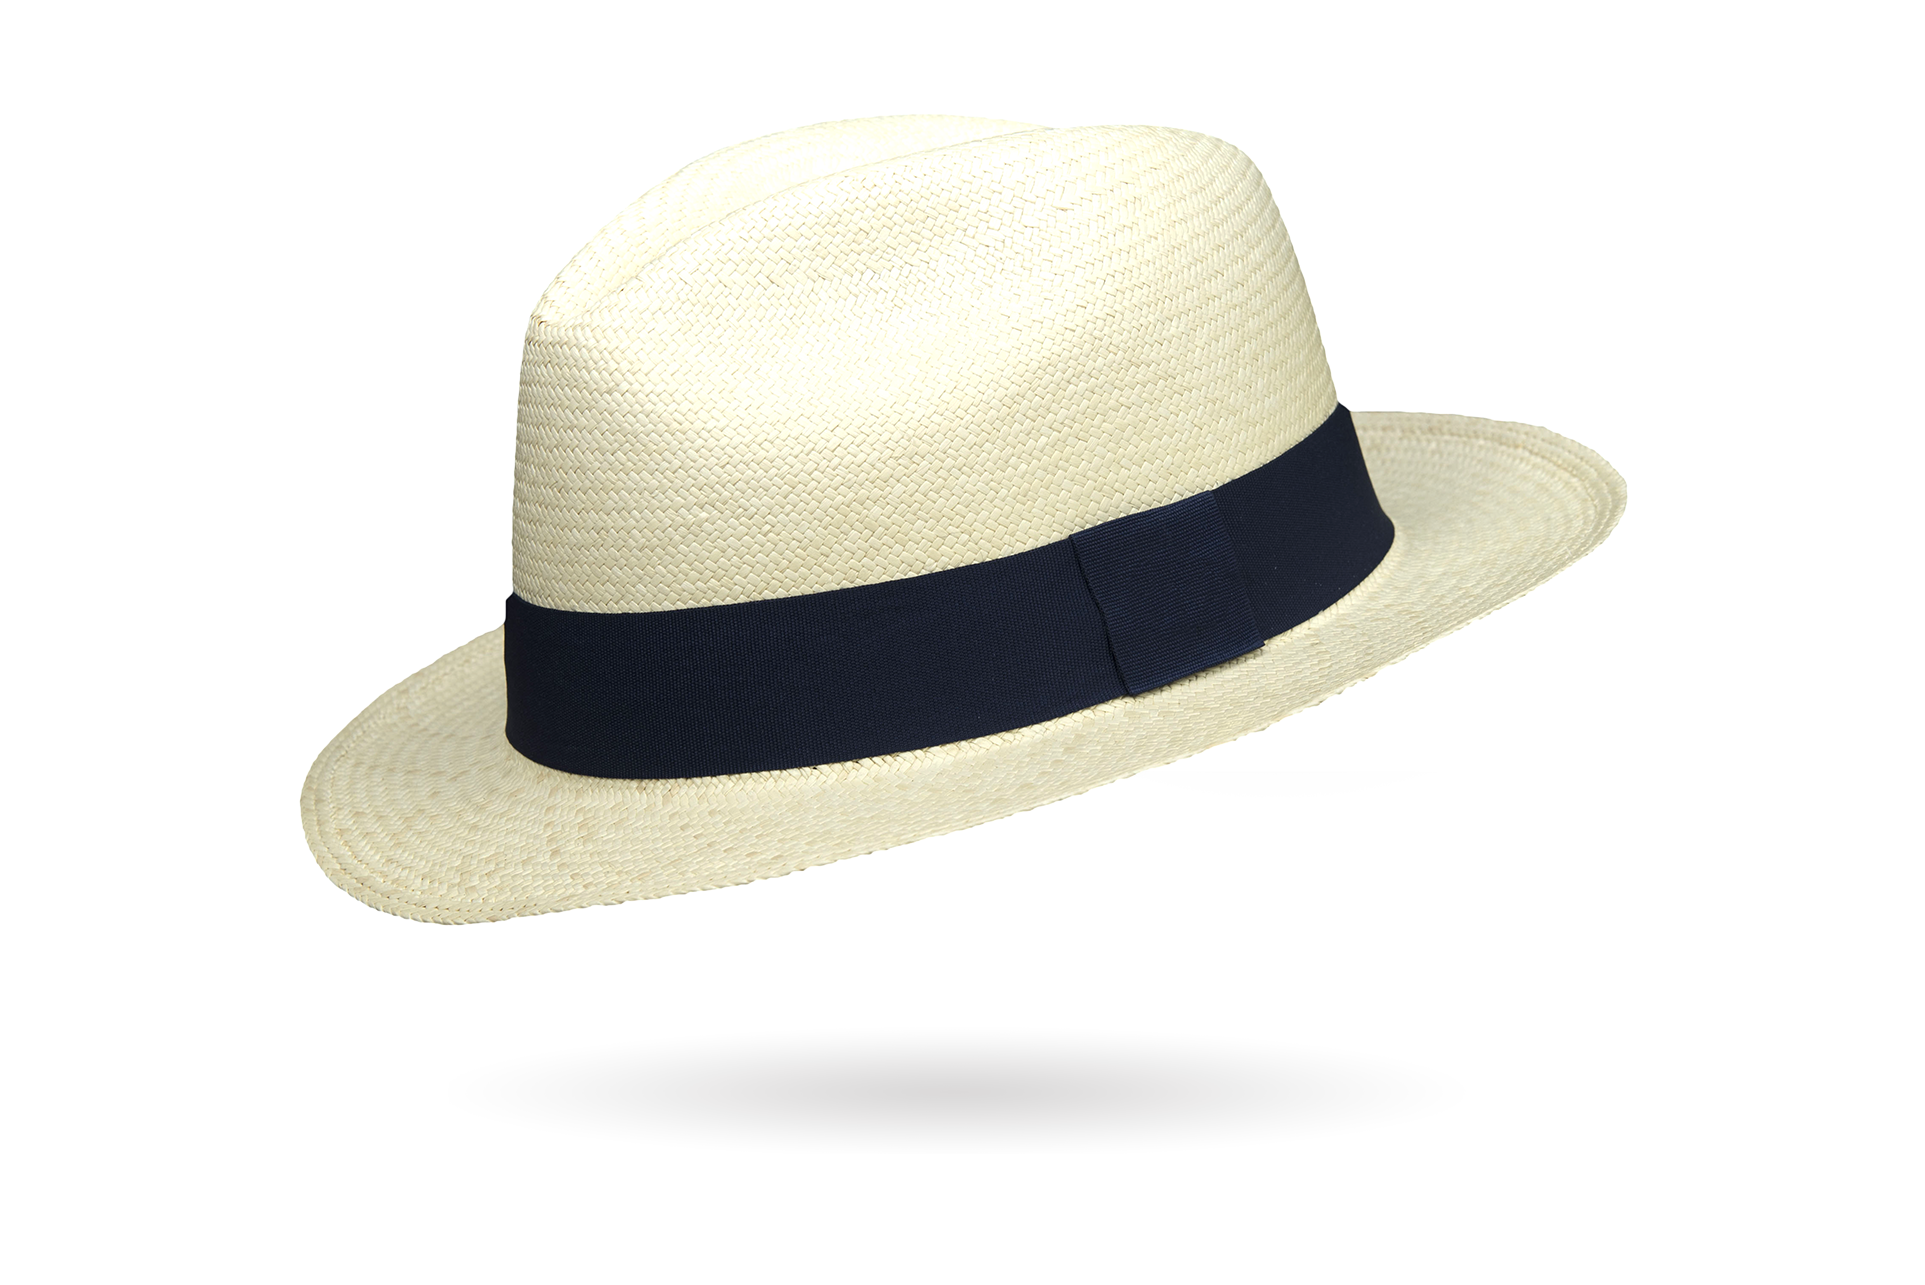 superfine Montecristo Panama hat